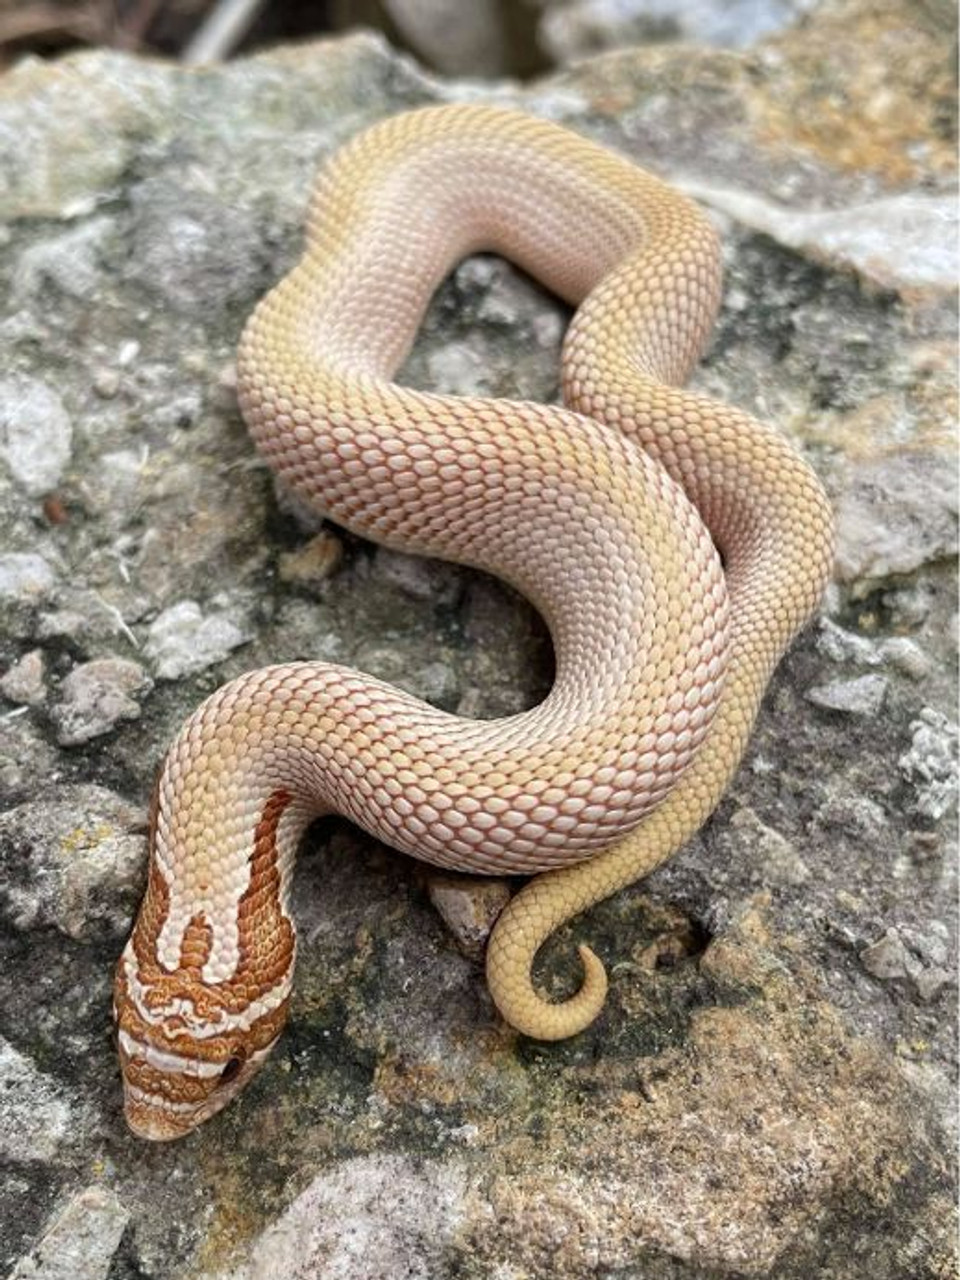 Anaconda snake for sale